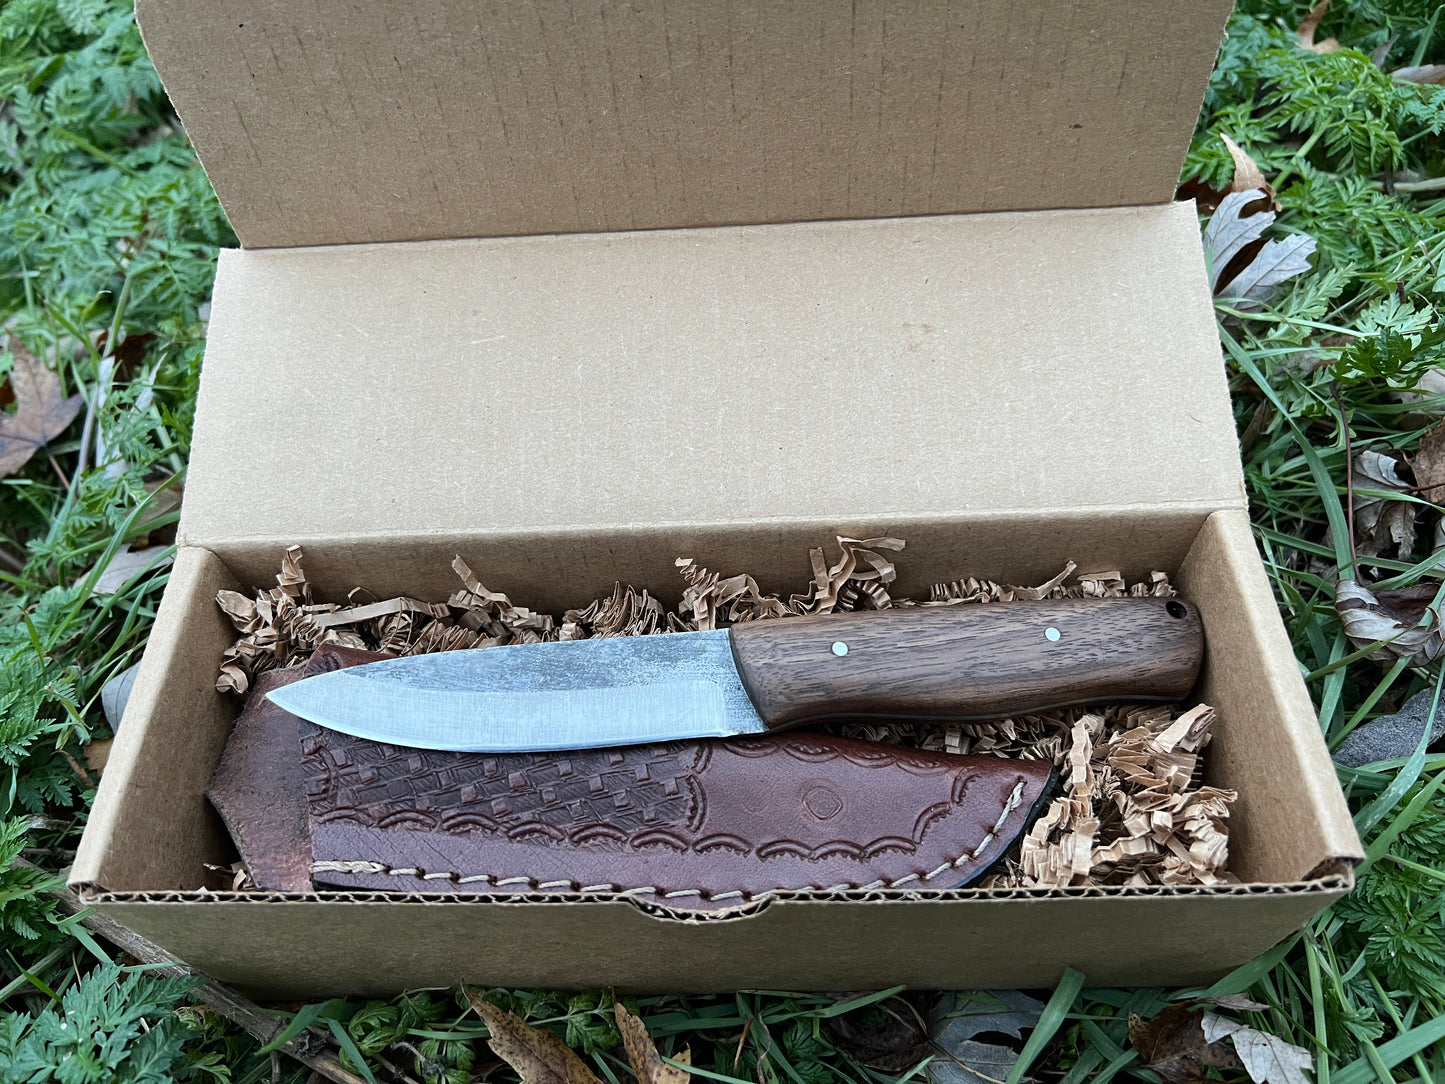 Bushcraft Knife